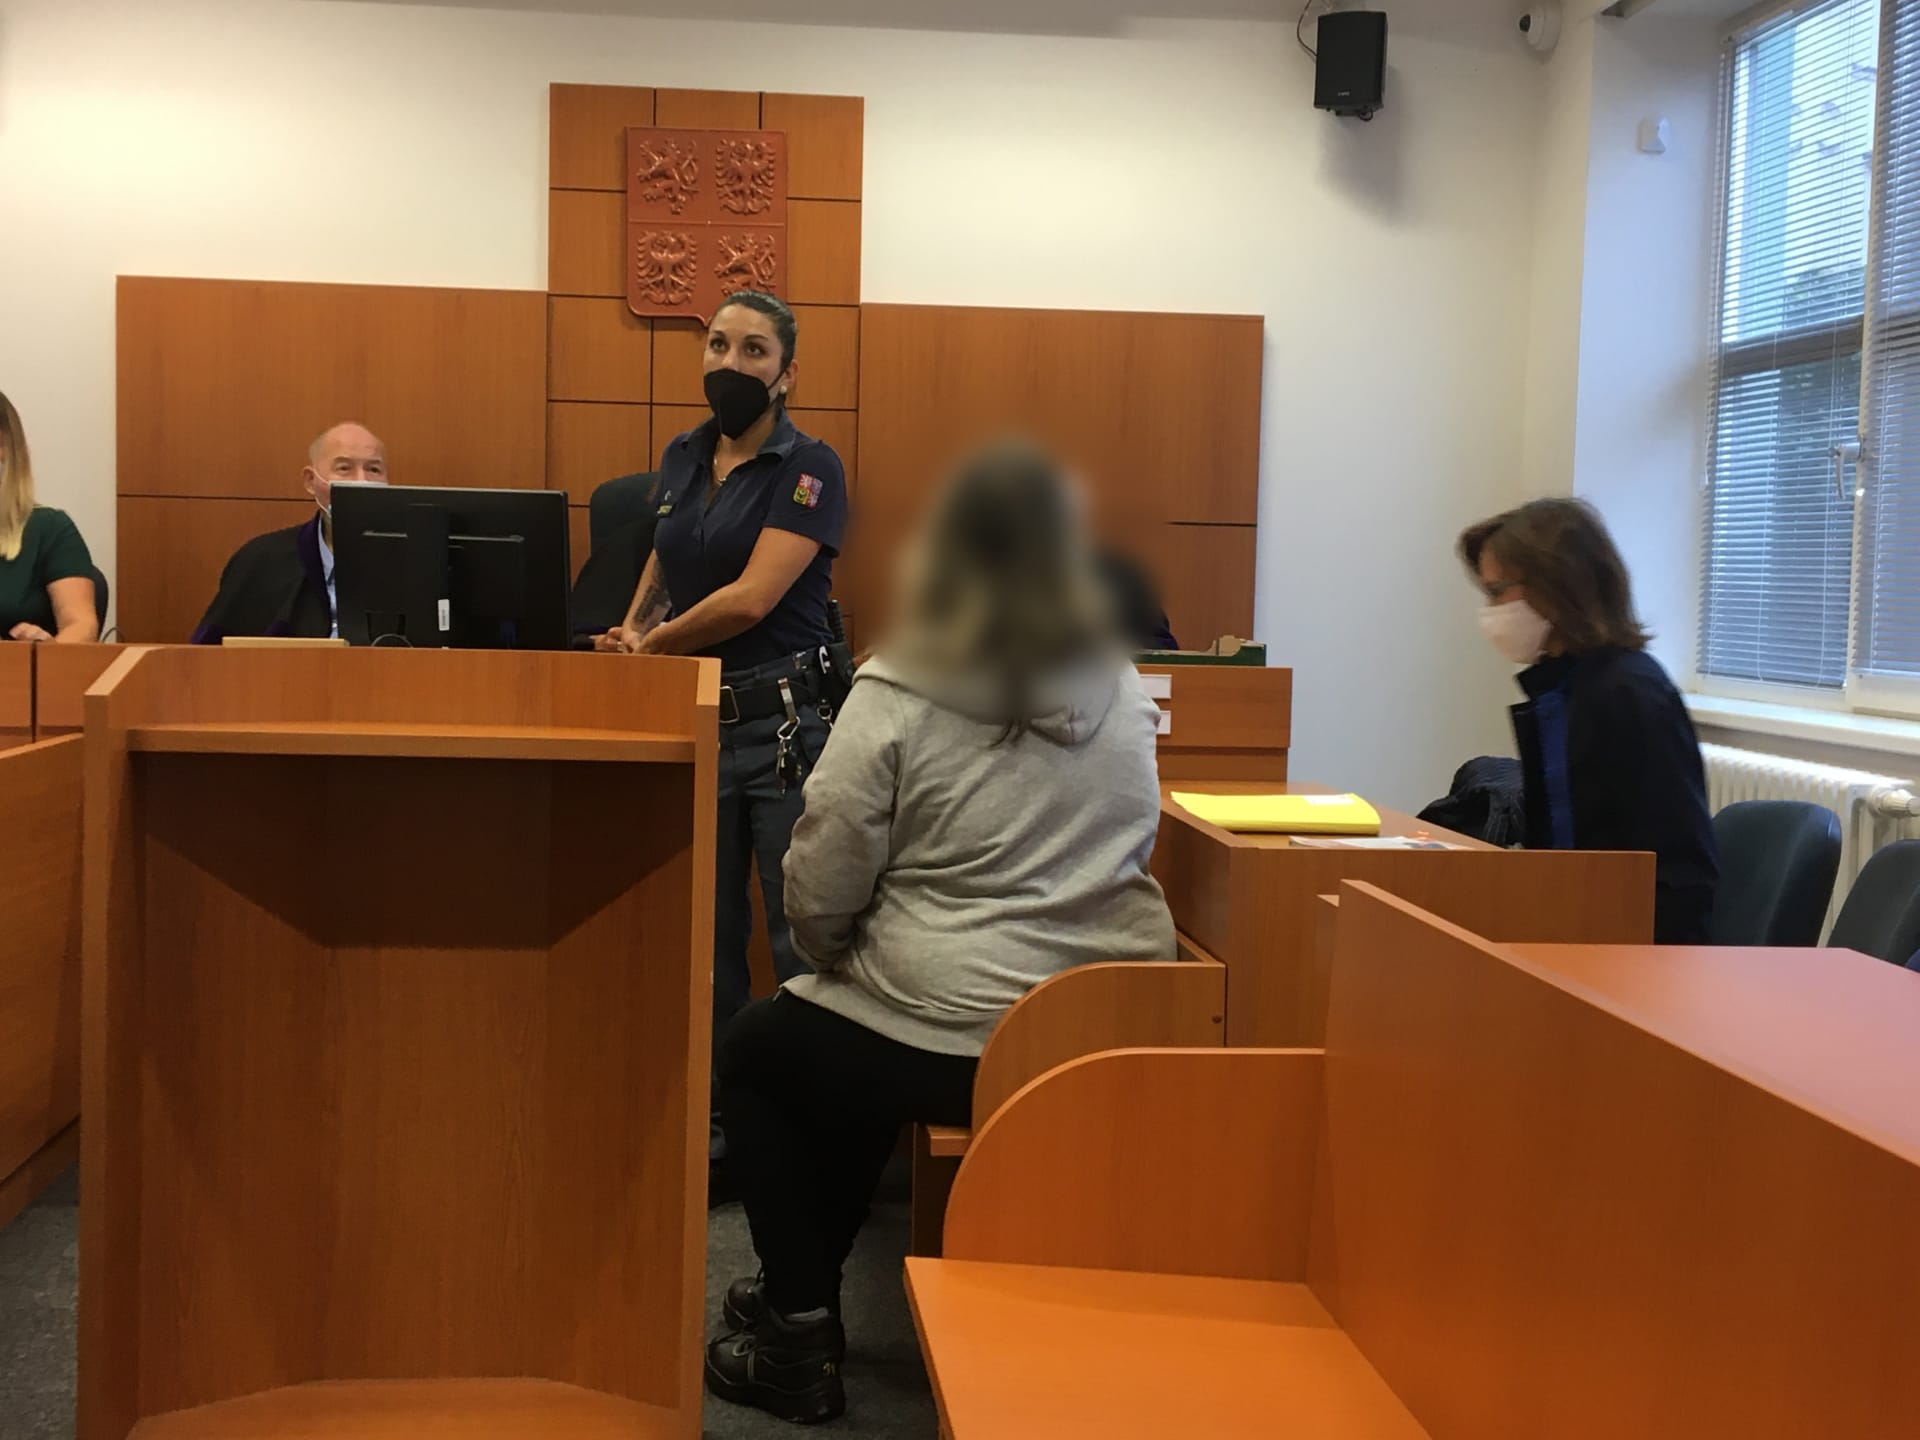 Žena z Havlíčkobrodska skončila před soudem, zaútočila na bývalého partnera paličkou na maso a nožem.